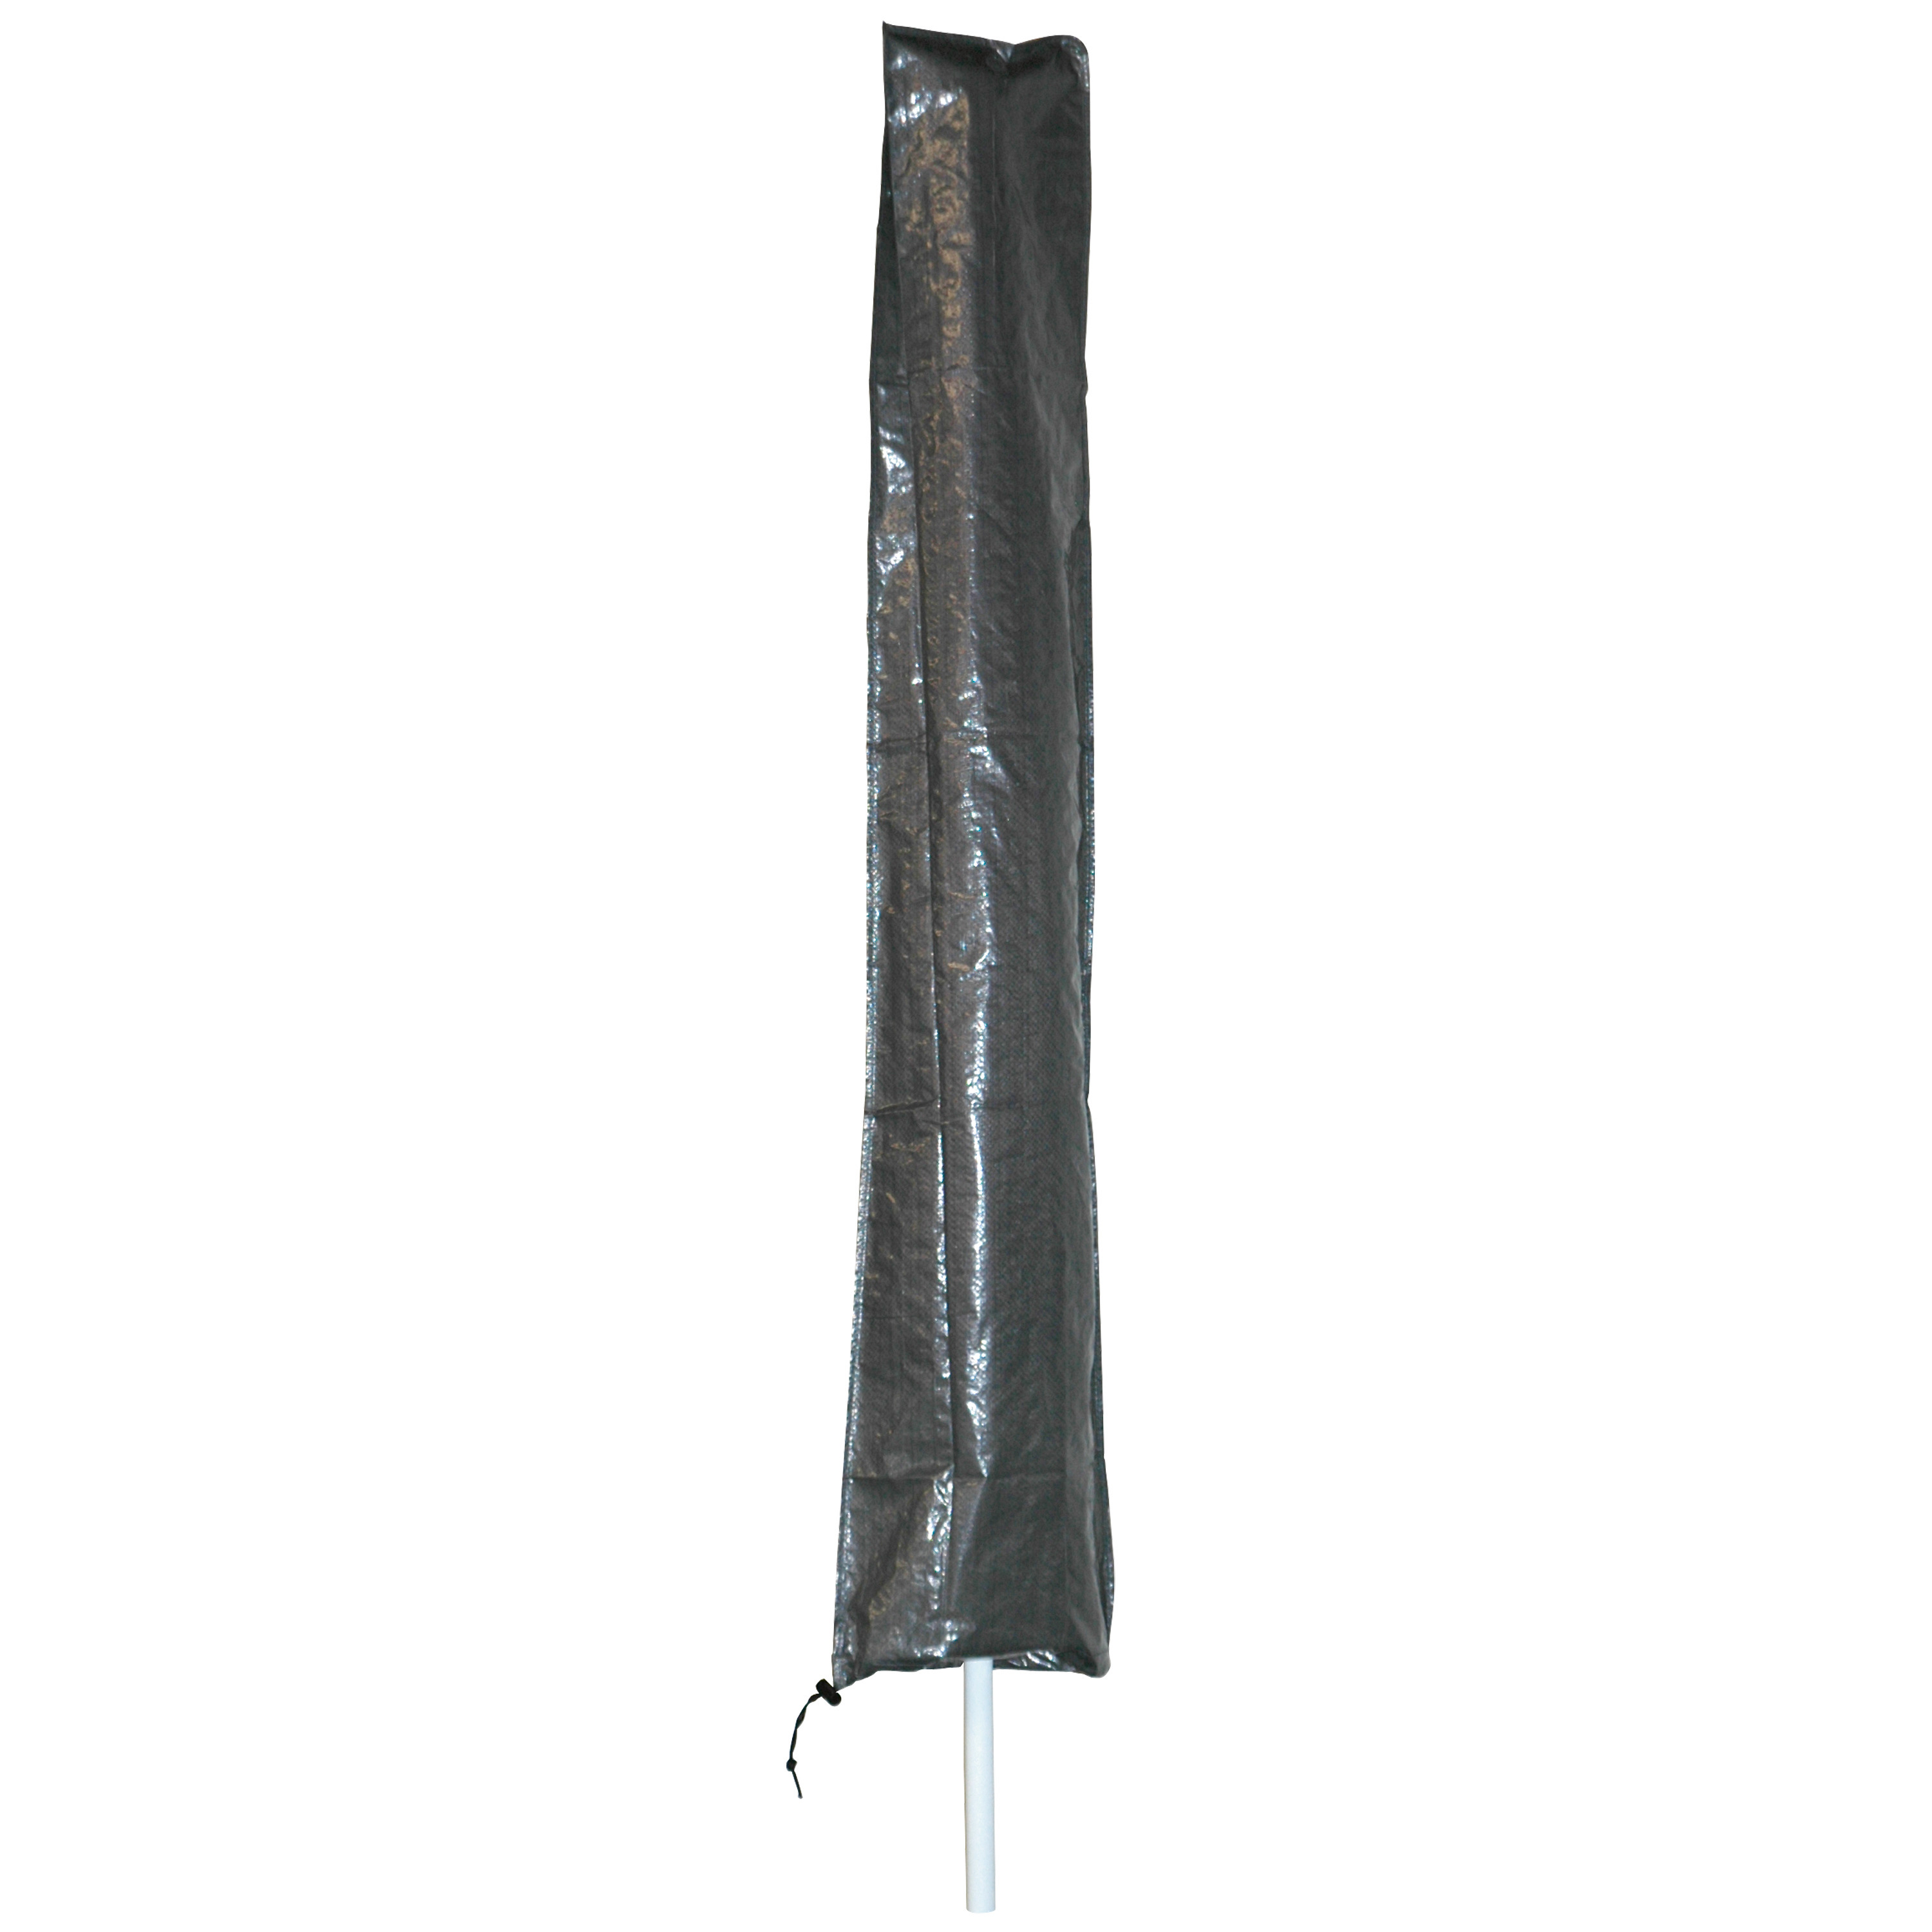 Afdekhoes-beschermhoes grijs voor zweefparasols met een diameter van 3 m inclusief stok